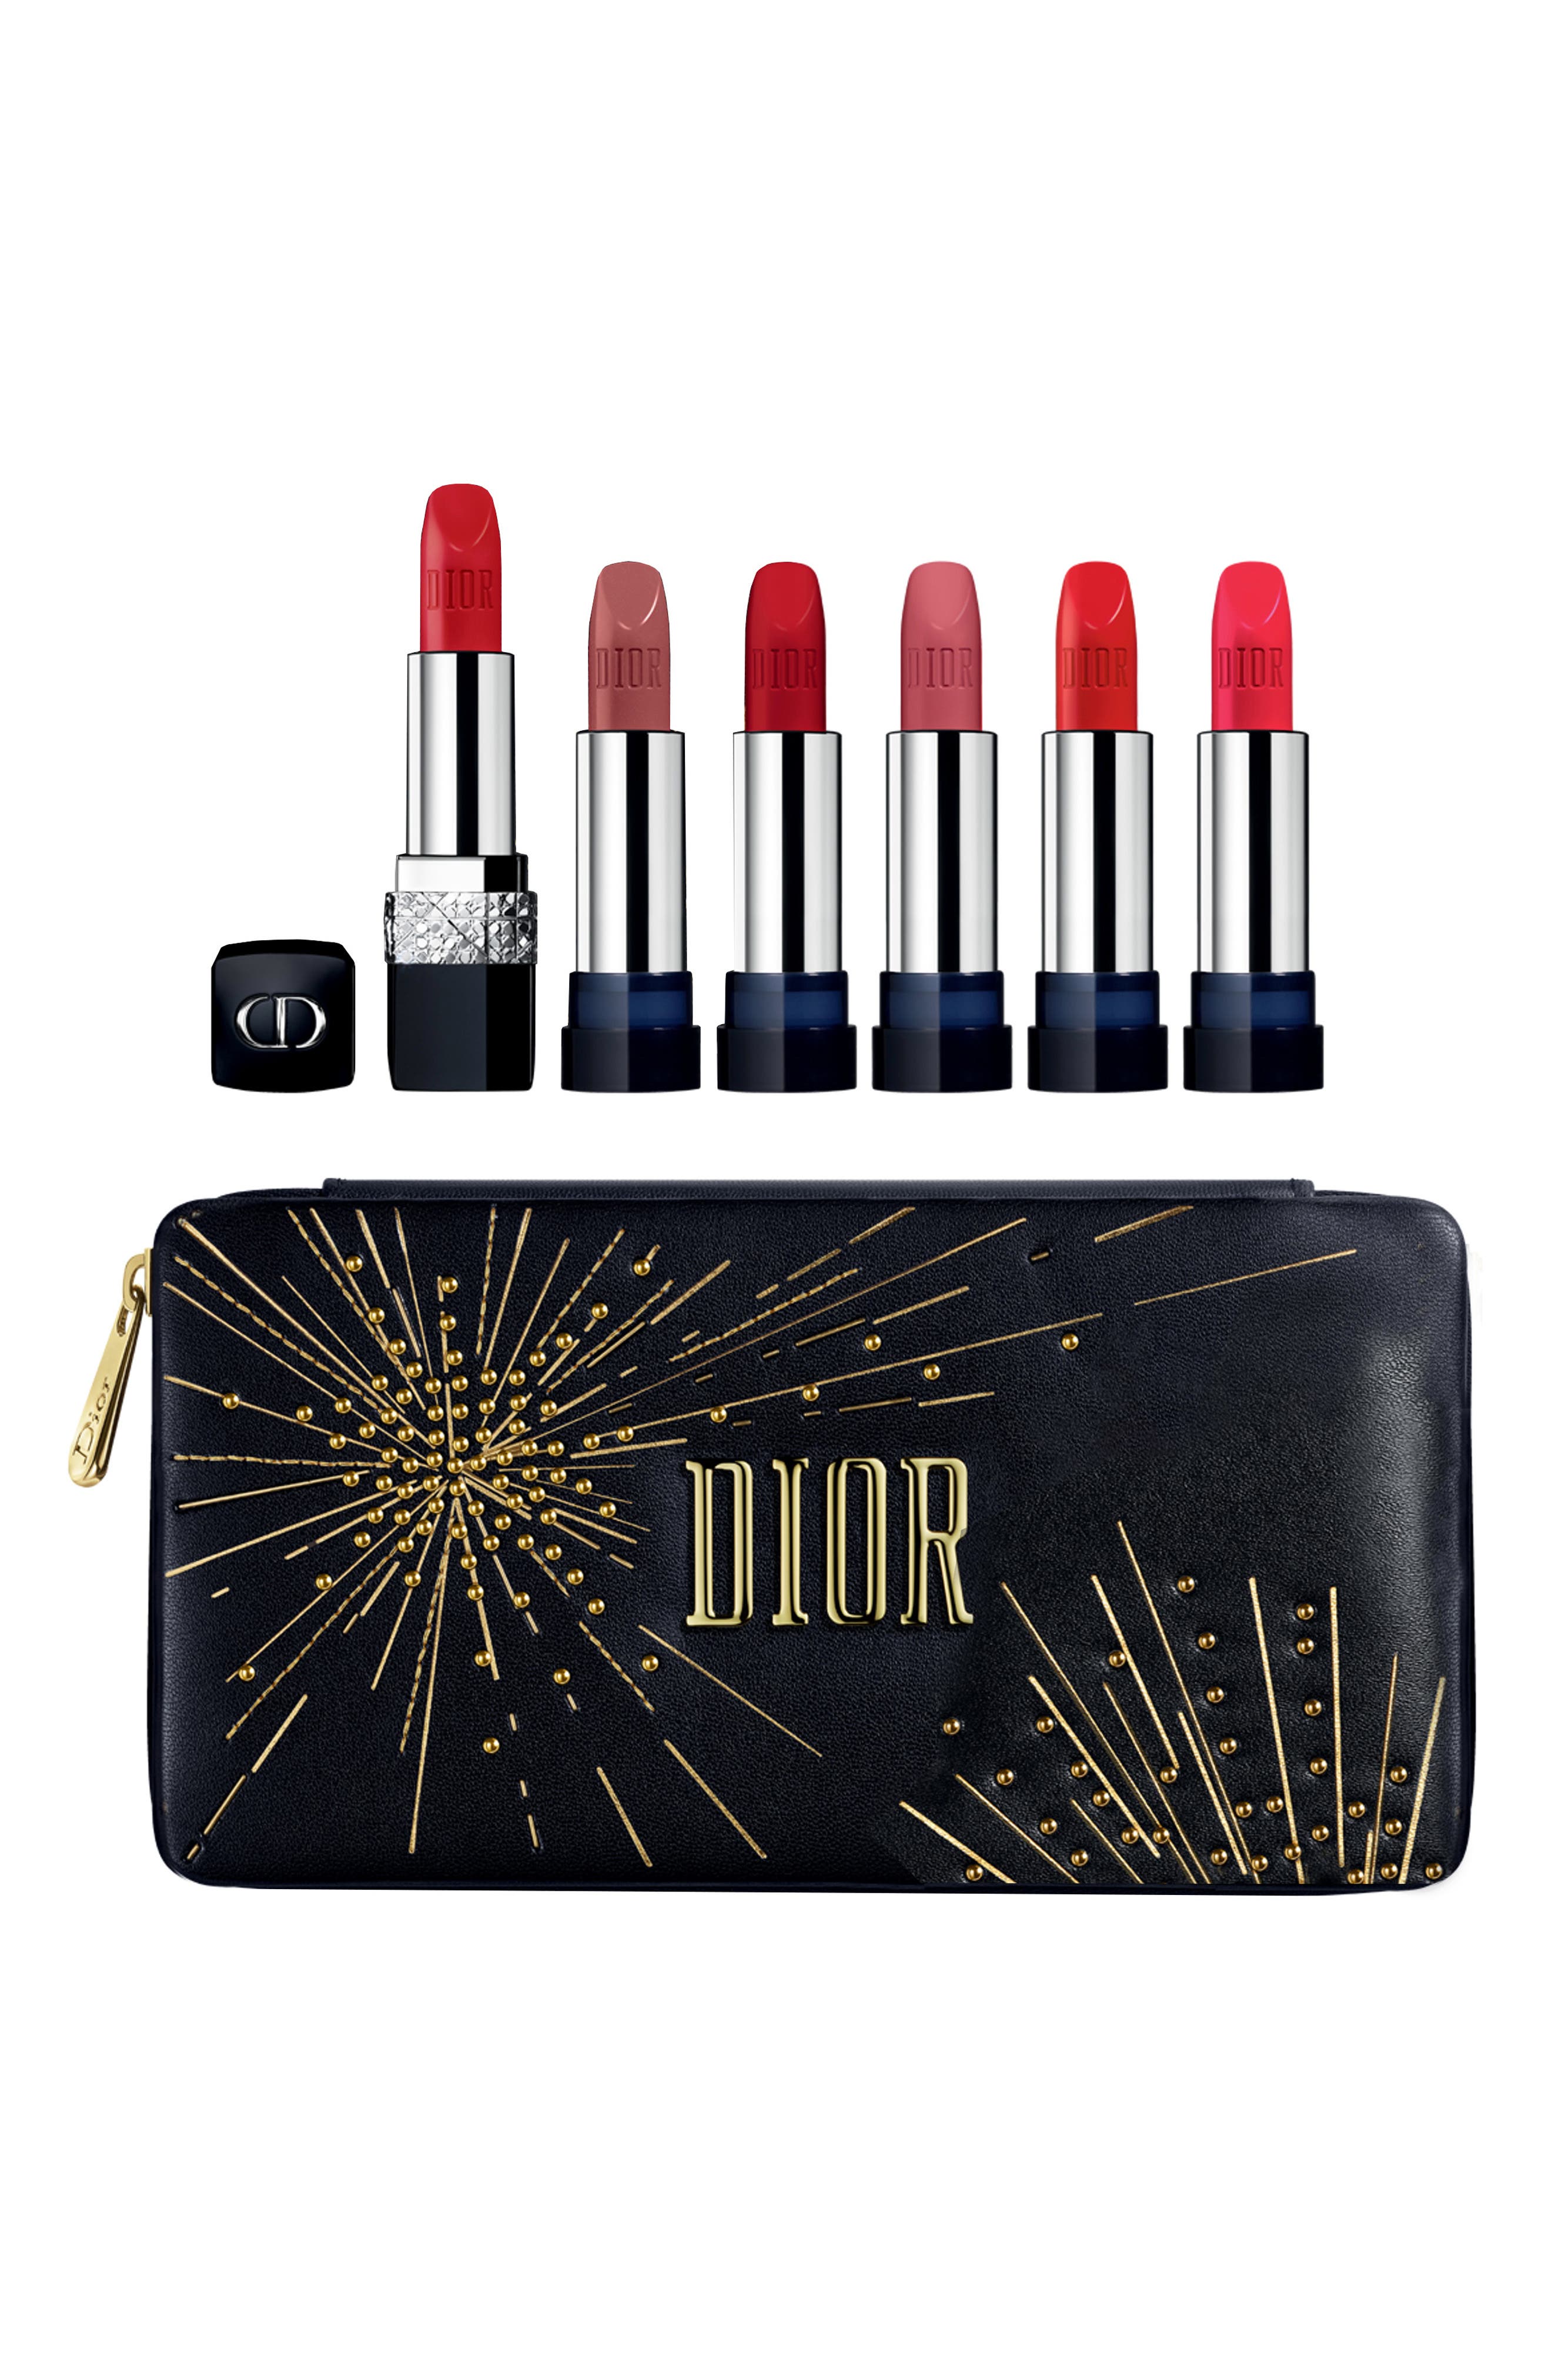 dior makeup sets